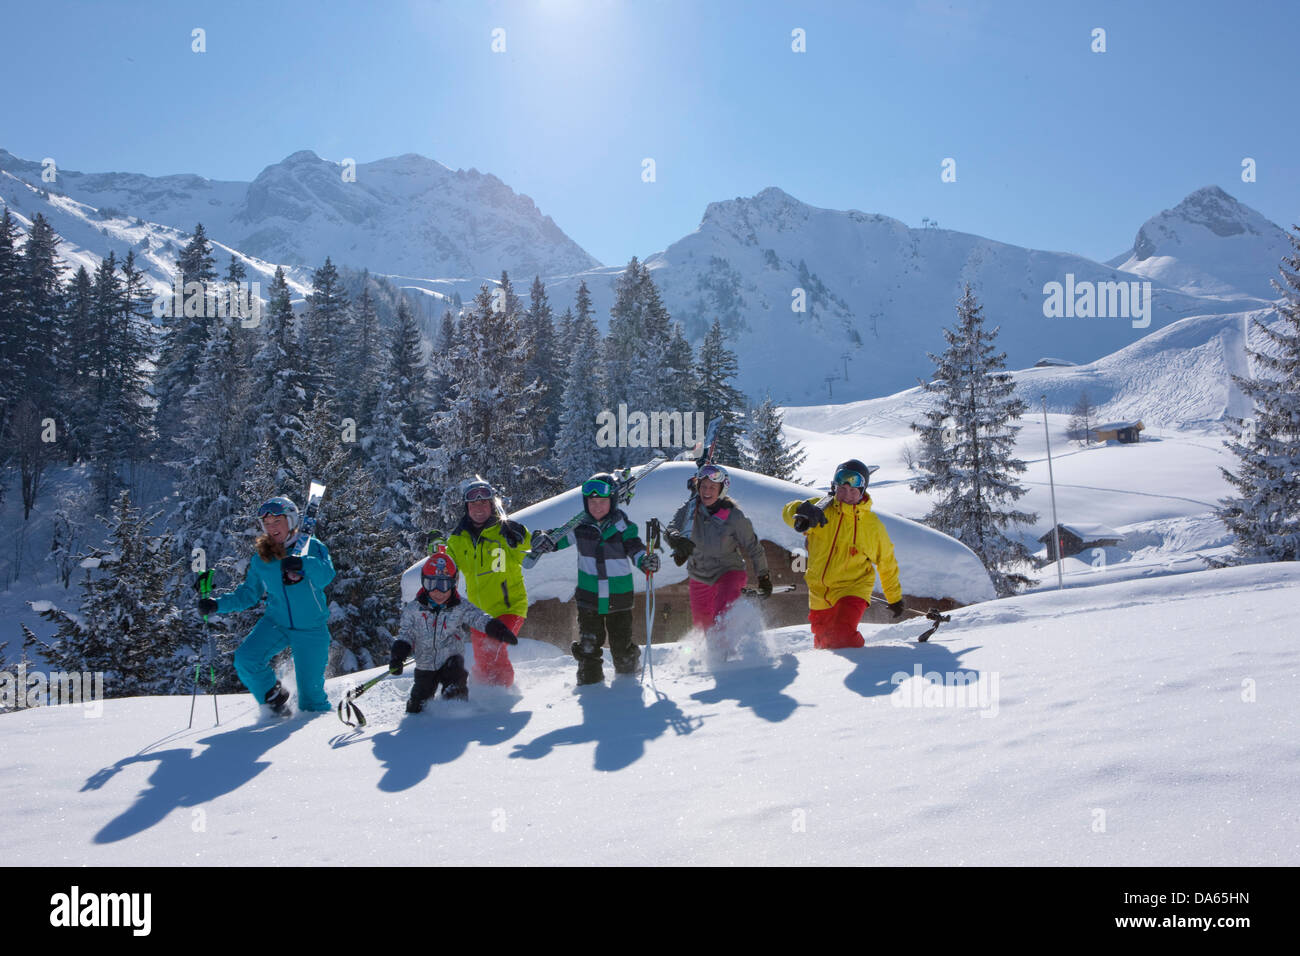 Famiglia, inverno, chat di gruppo, area sciistica, Adelboden, inverno, il cantone di Berna Oberland Bernese, turismo, vacanze famiglia inverno sp Foto Stock